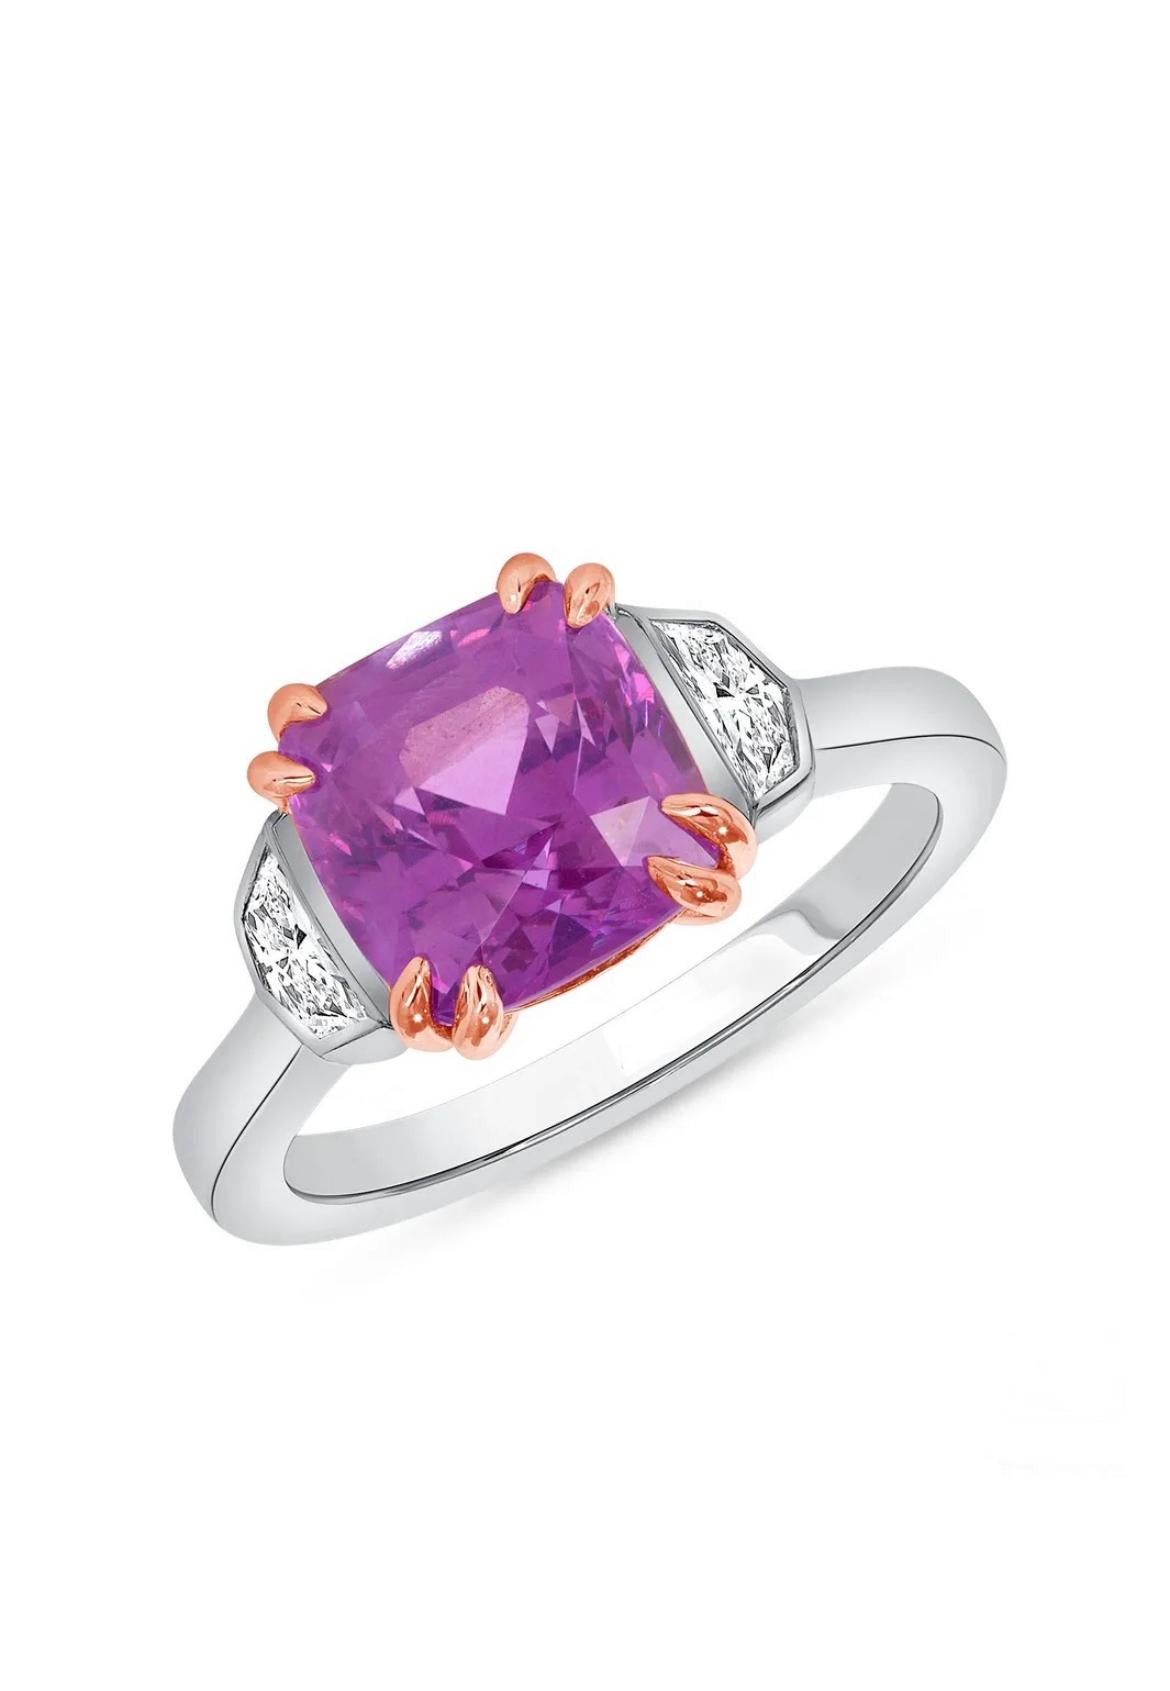 Ein 4,72 ct. großer, unbehandelter Ceylon Pink Sapphire schimmert in einem faszinierenden, satten Rosa, das von zwei Diamanten im Cadillac-Schliff von insgesamt 0,34 ct. eingefangen wird. Das atemberaubende Juwel ist ein wunderschöner